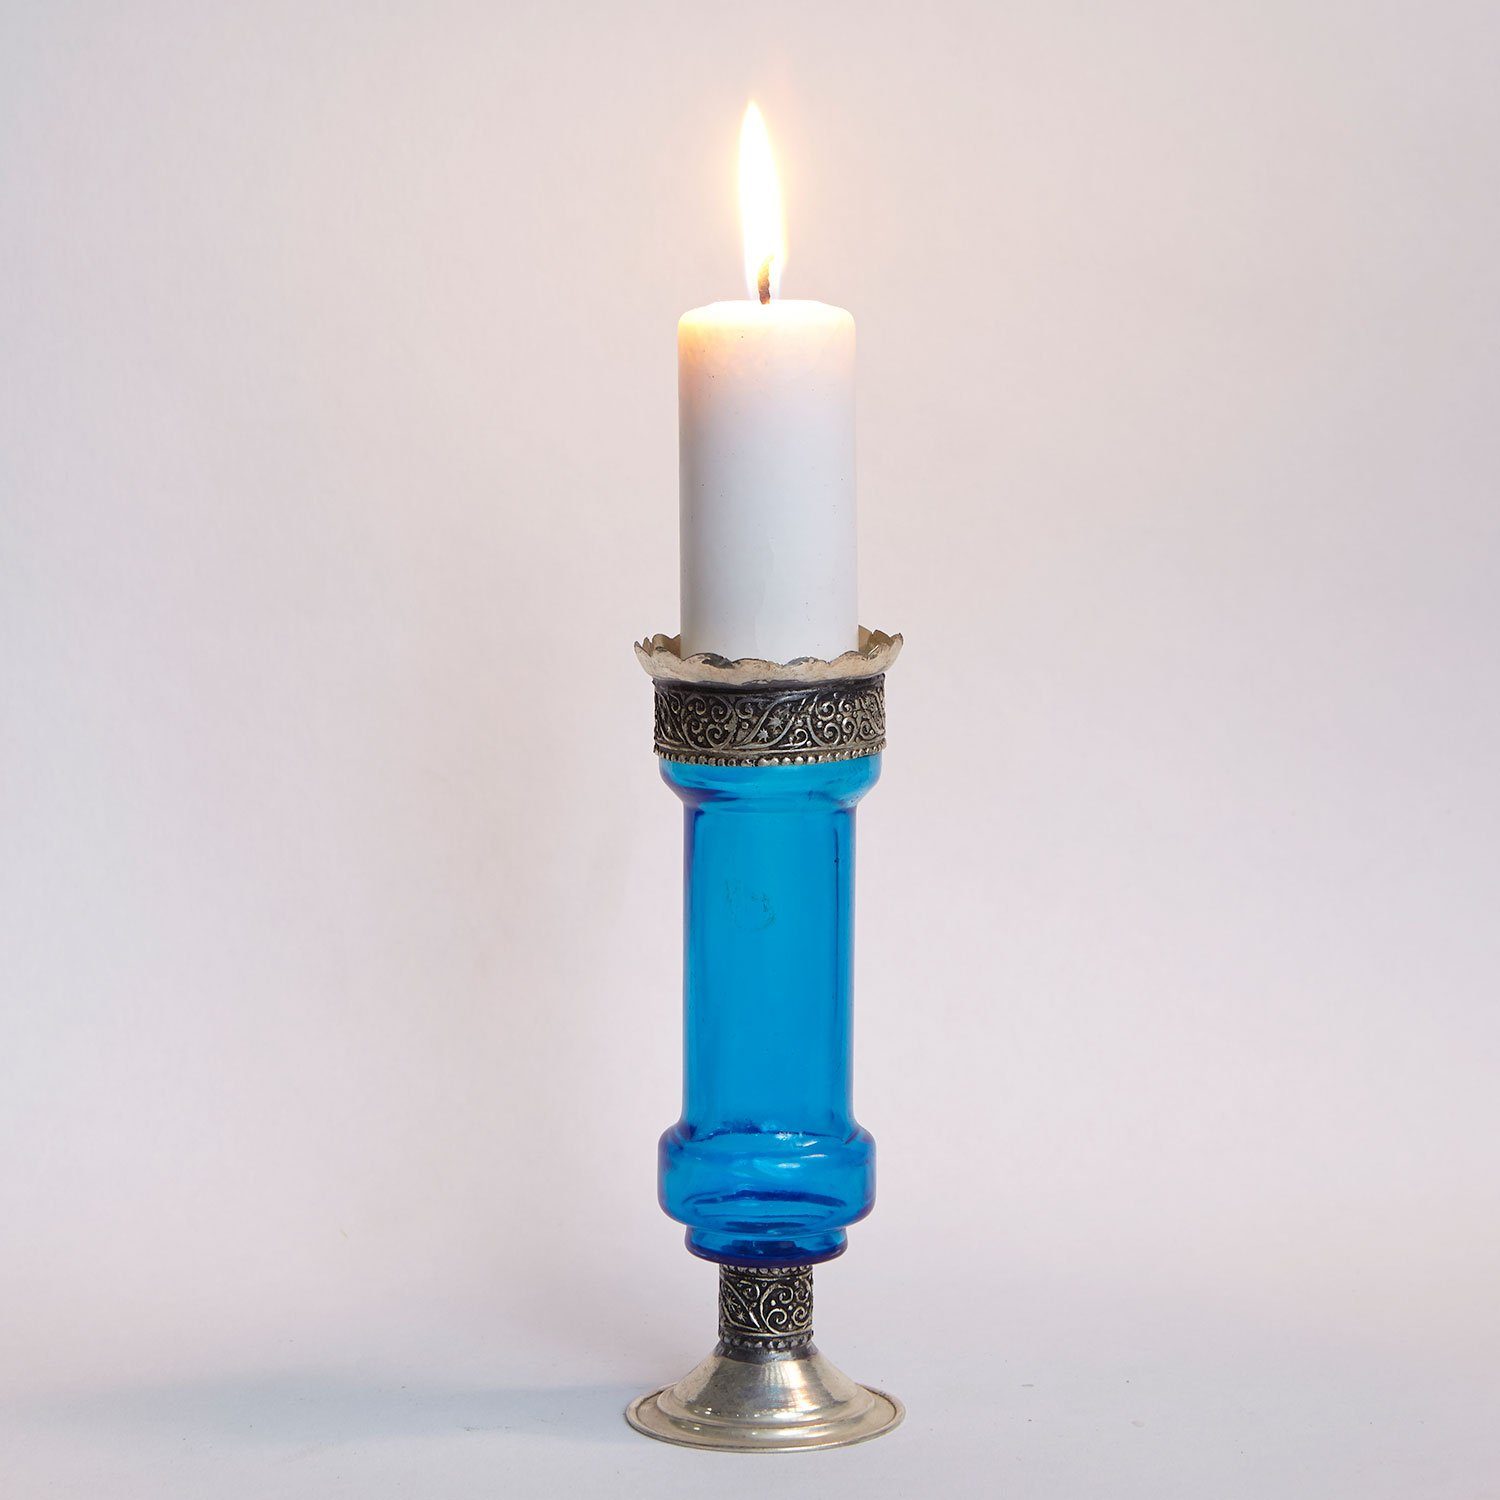 Casa Moro Kerzenständer Orientalischer (Kerzenhalter Beleuchtung), Kerzenständer marokkanische romantische Manar & Blau für Kerzenlicht Weihnachtsdekoration Kerzenleuchter